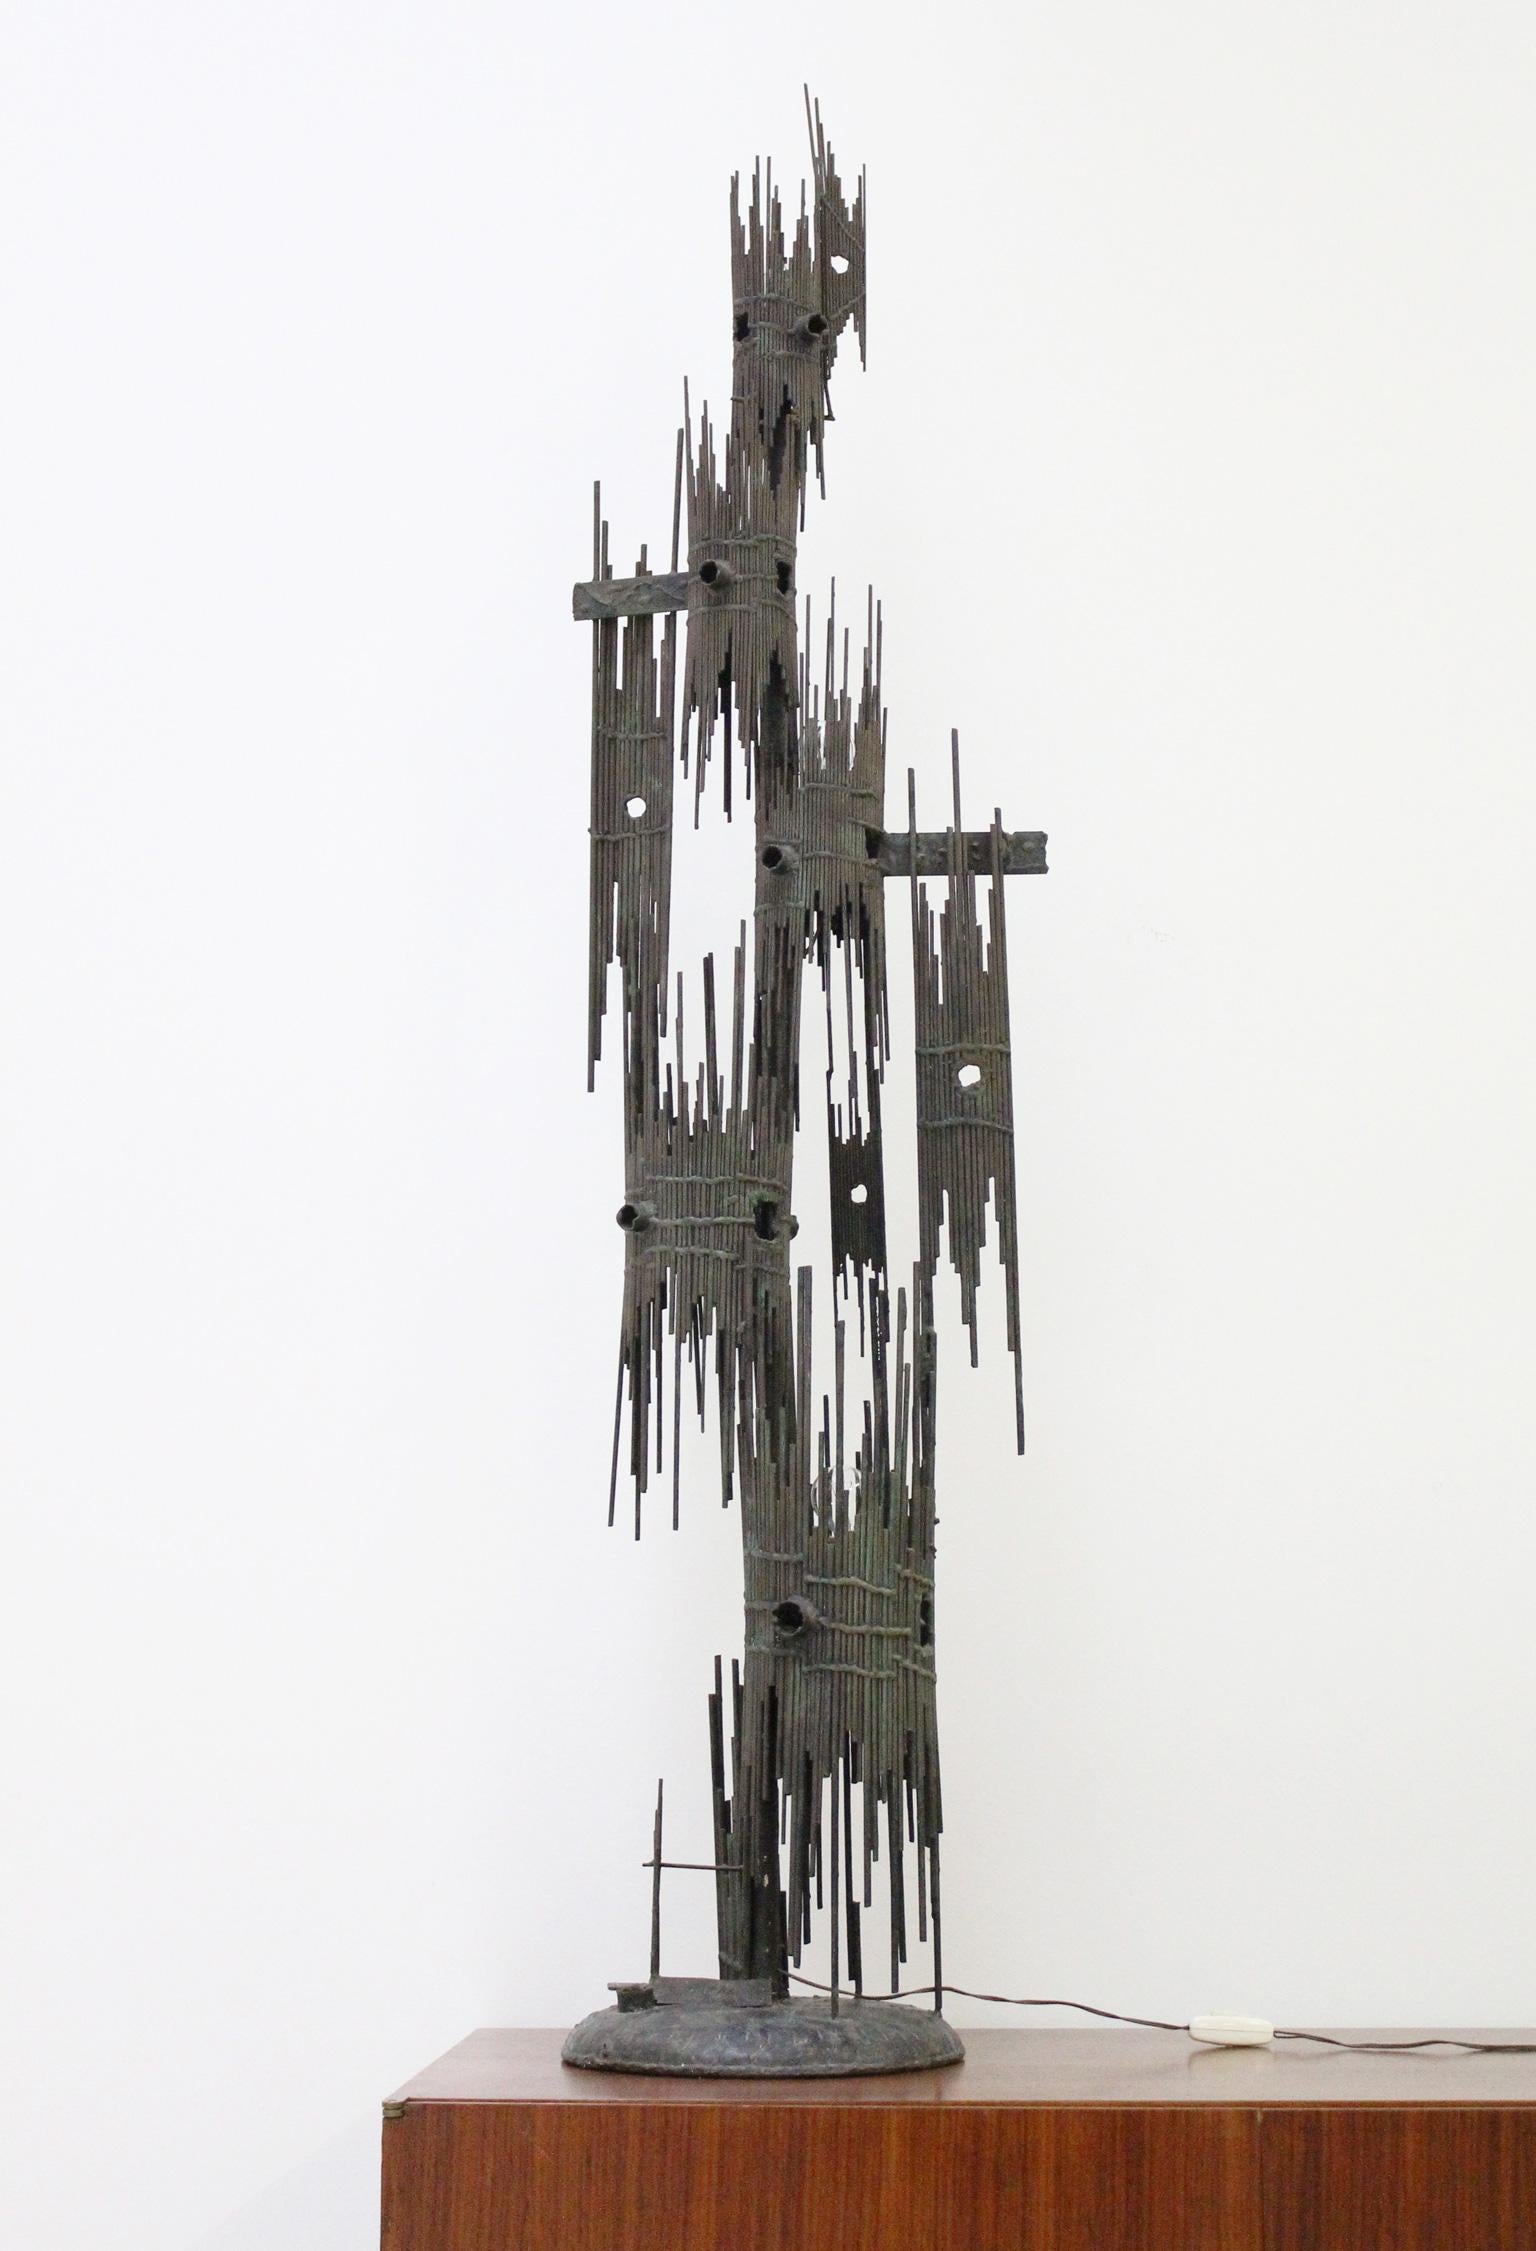 Große beleuchtete Skulptur von Di Giovanni, Italien, 1960er Jahre. Brutalistische skulpturale Formen aus zusammengeschweißten Eisenstangen. Unterzeichnet von M. Di Giovanni.